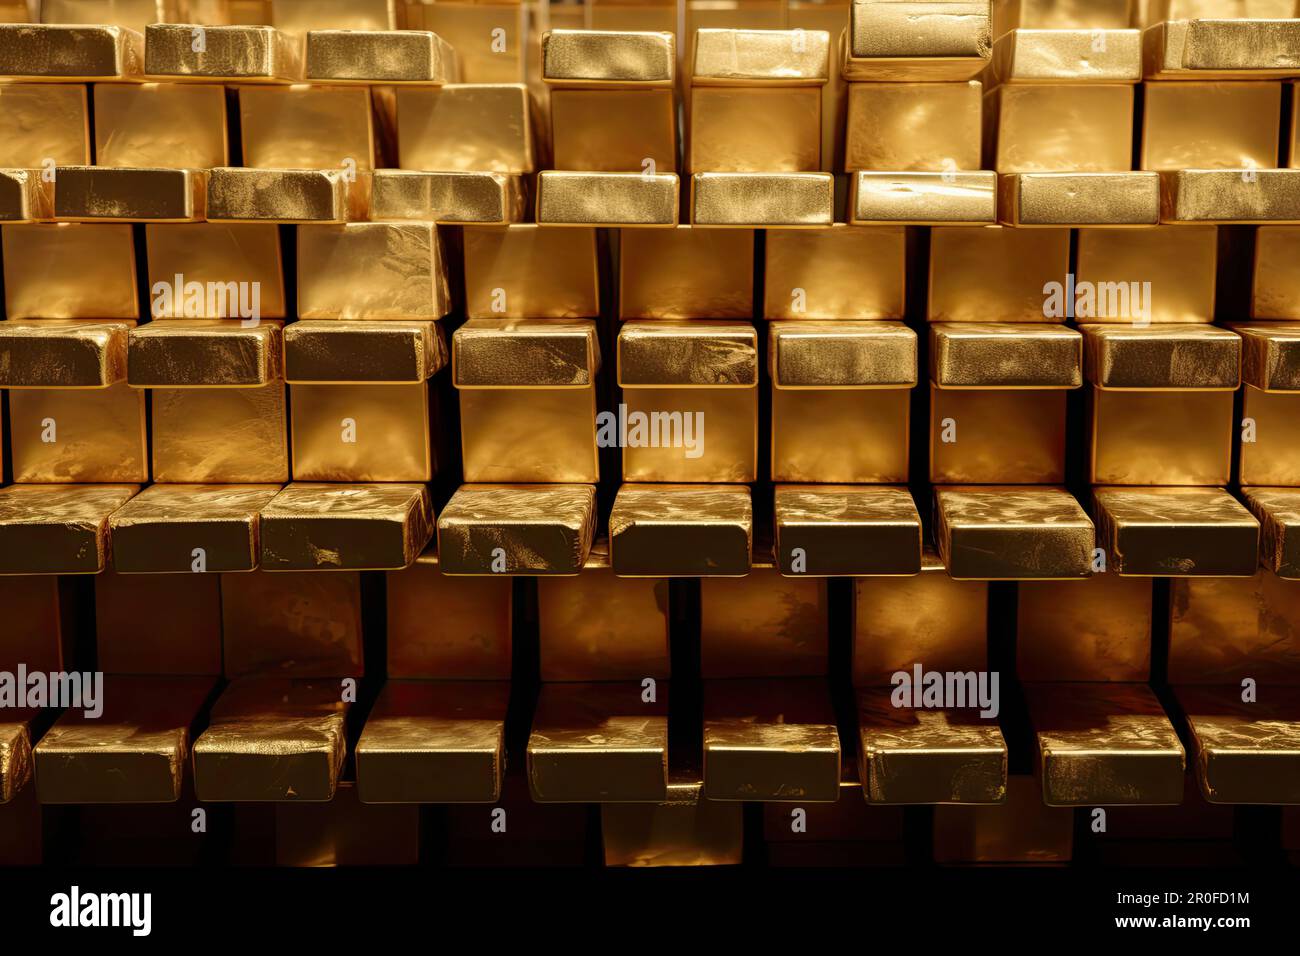 Konzept der Investition in physisches Gold, in Form von Barren. Ein zeitloser Wertvorrat, der seinen Wert unabhängig von wirtschaftlichen Schwankungen behält. KI Stockfoto